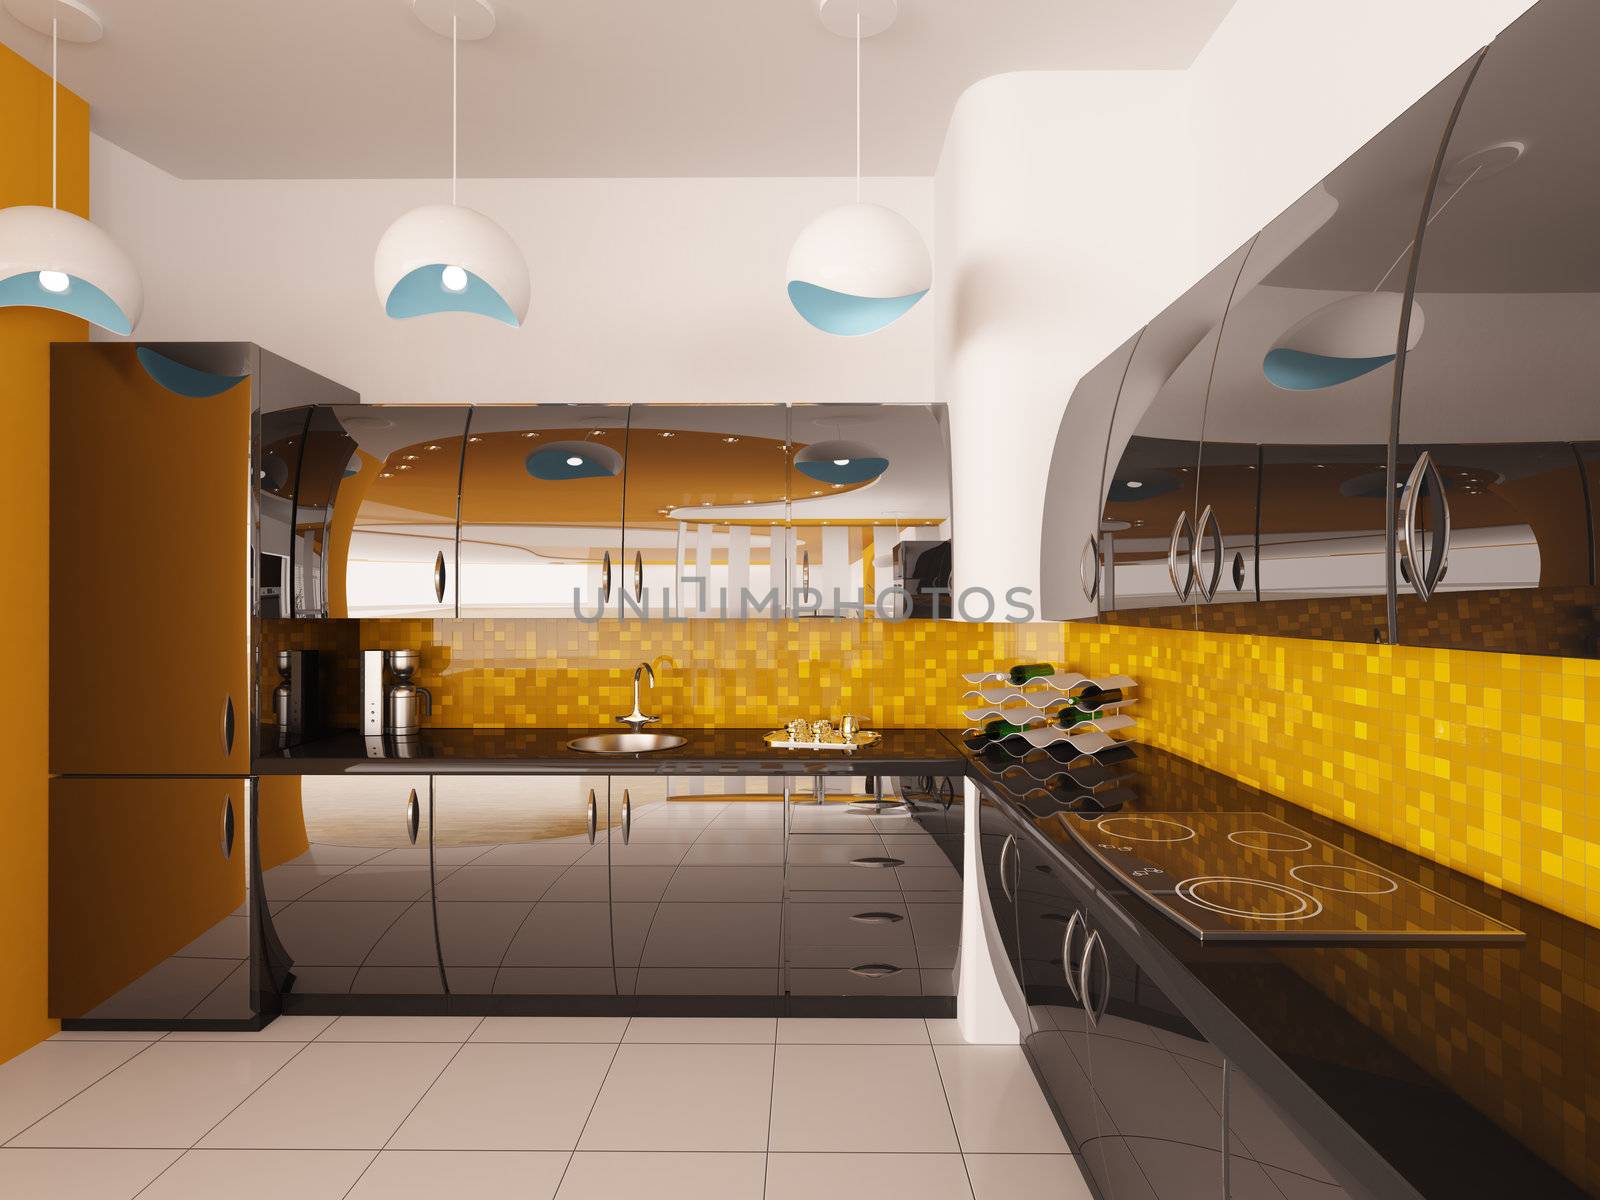 Interior design of modern black kitchen 3d render